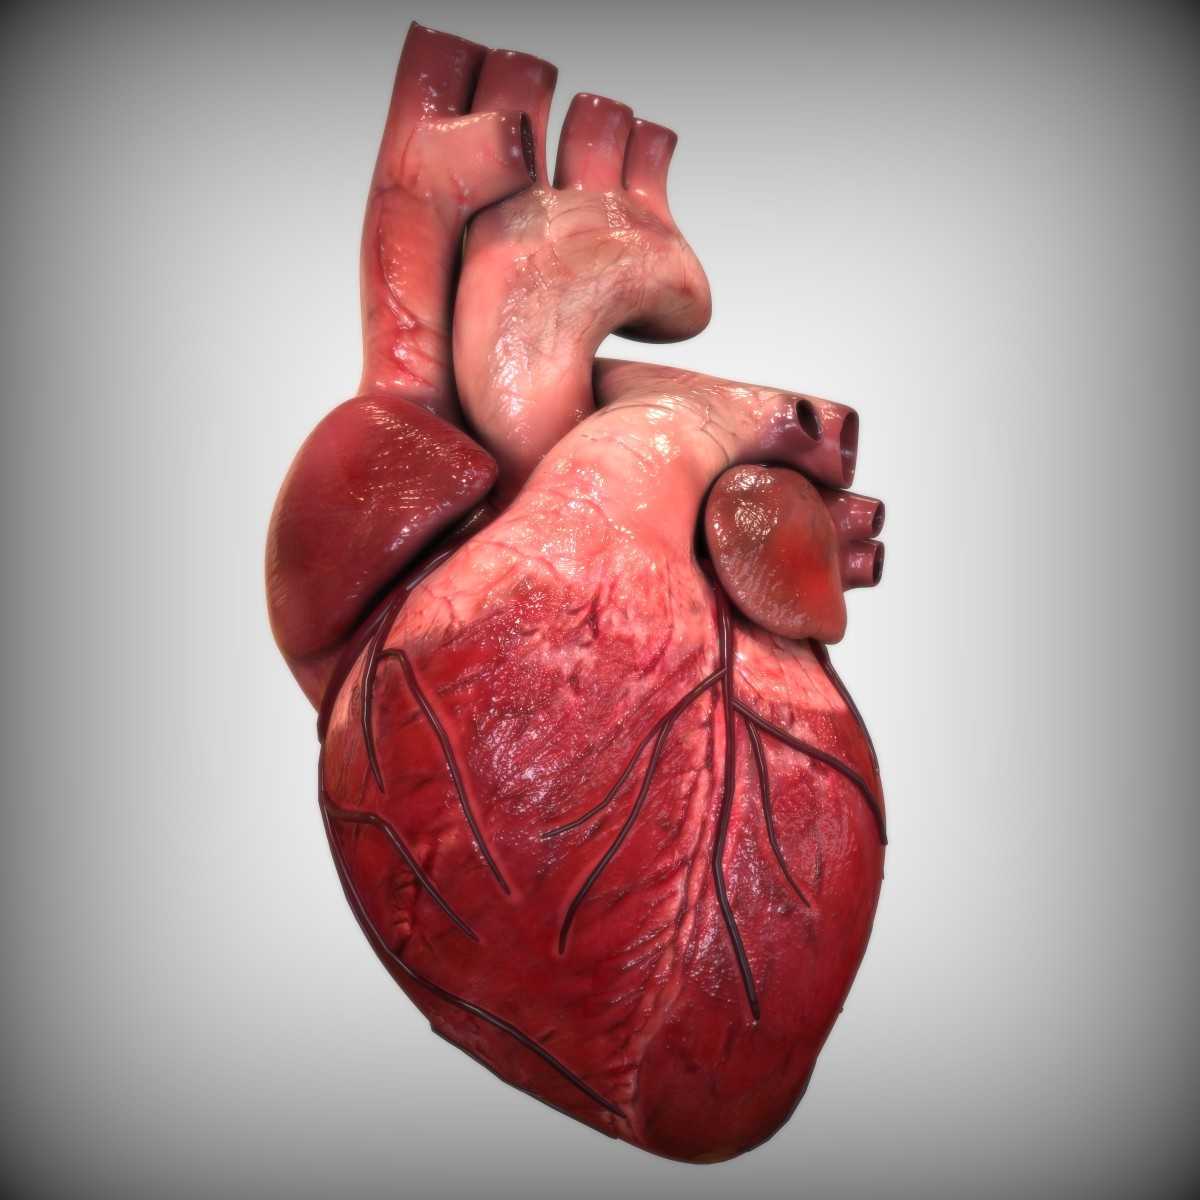 Сердце человека | анатомия сердца, строение, функции, картинки на eurolab